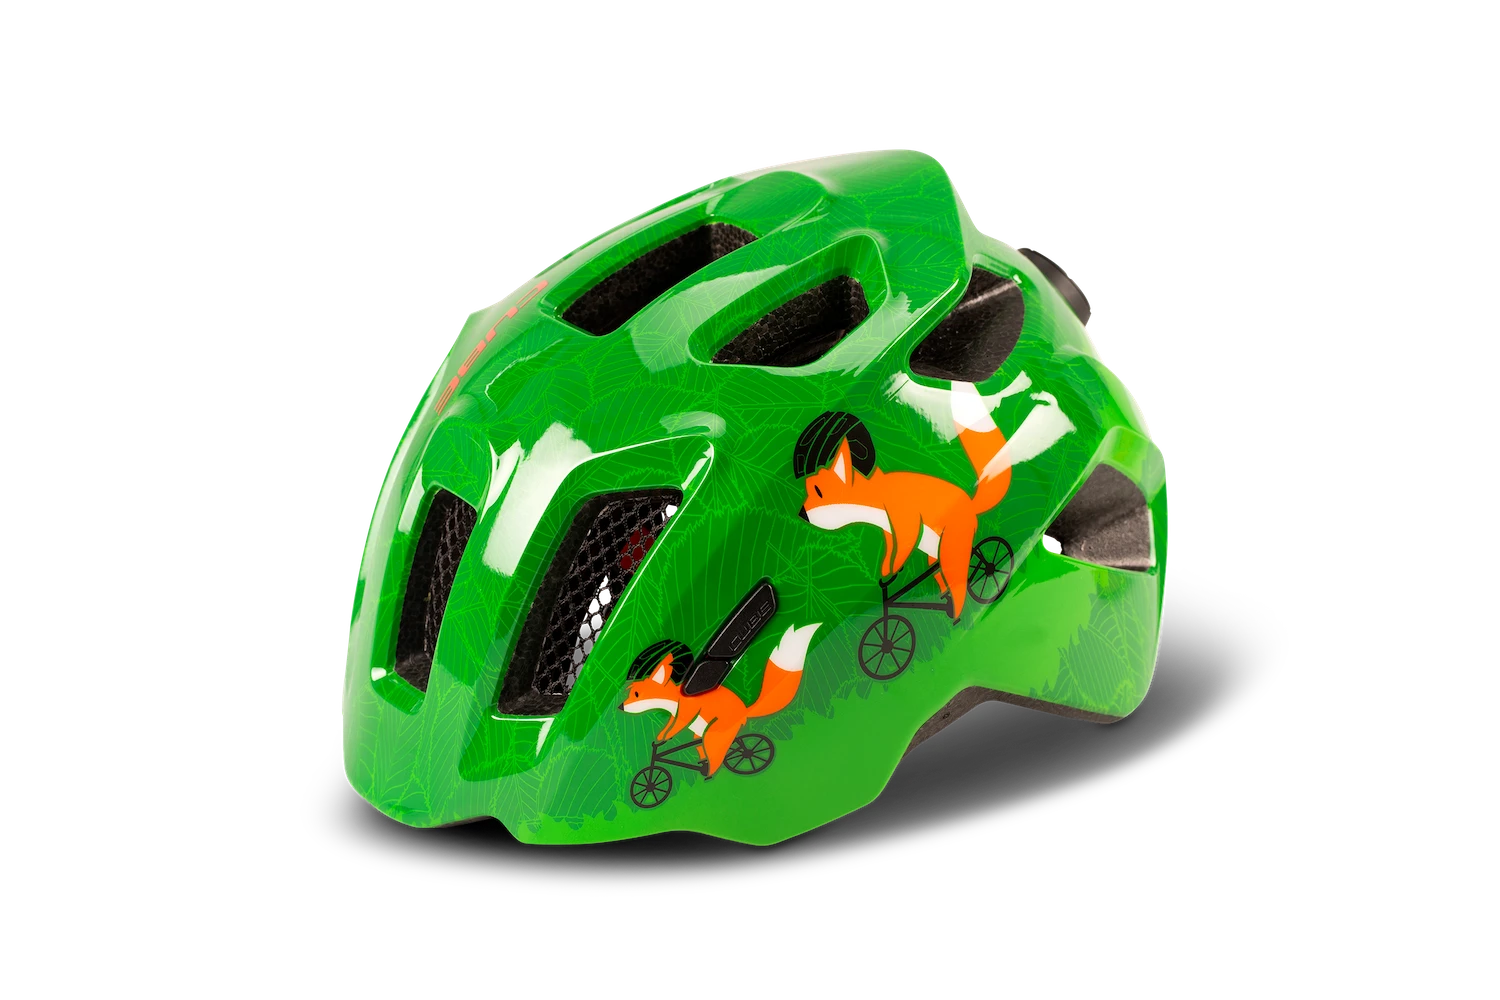 CUBE Helm FINK (green)